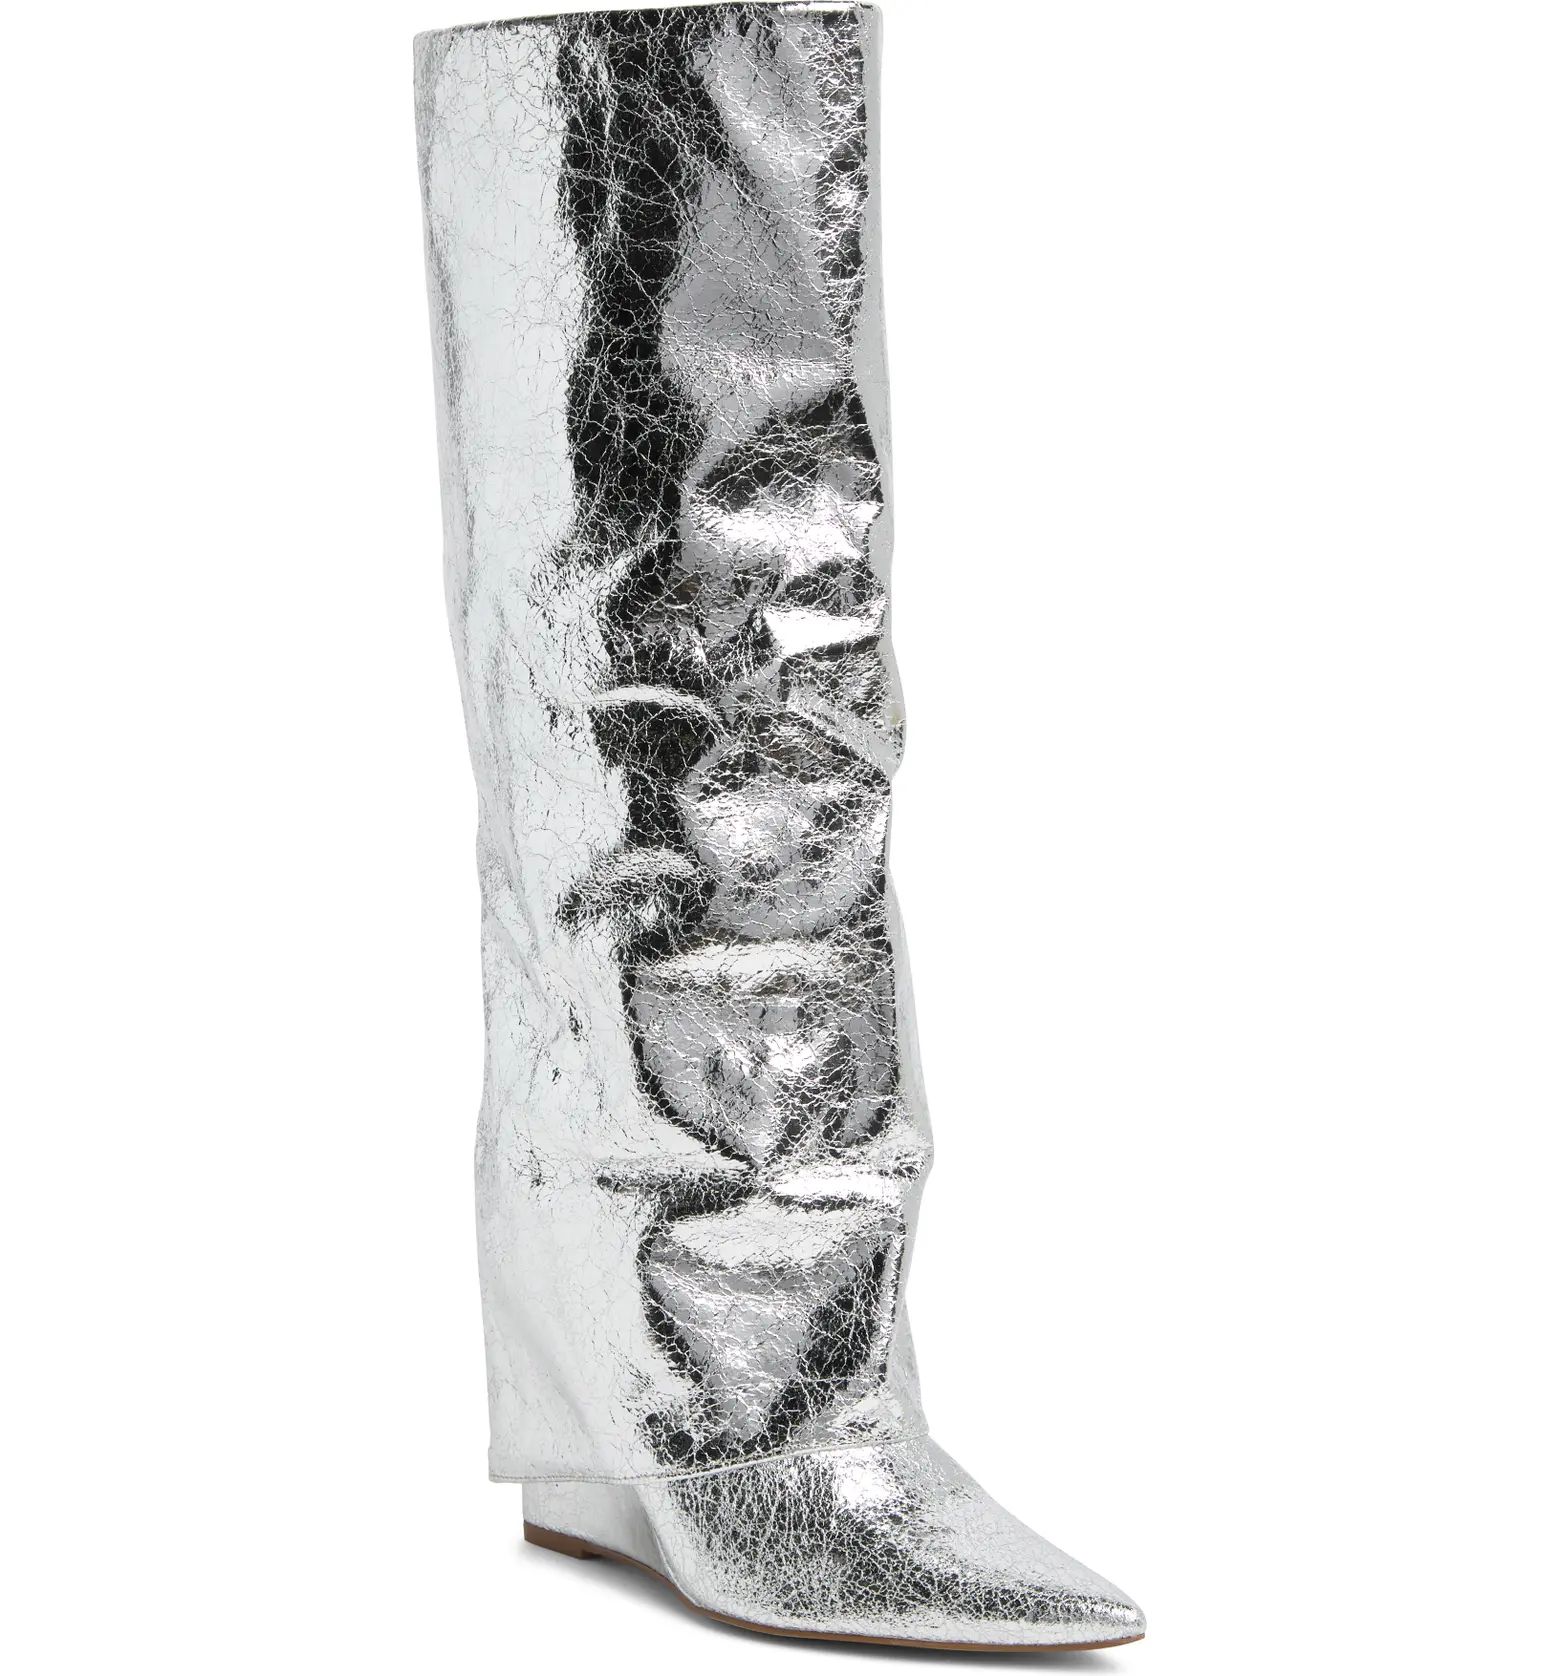 Paltrow Croc Embossed Knee High Boot (Women) | Nordstrom Rack